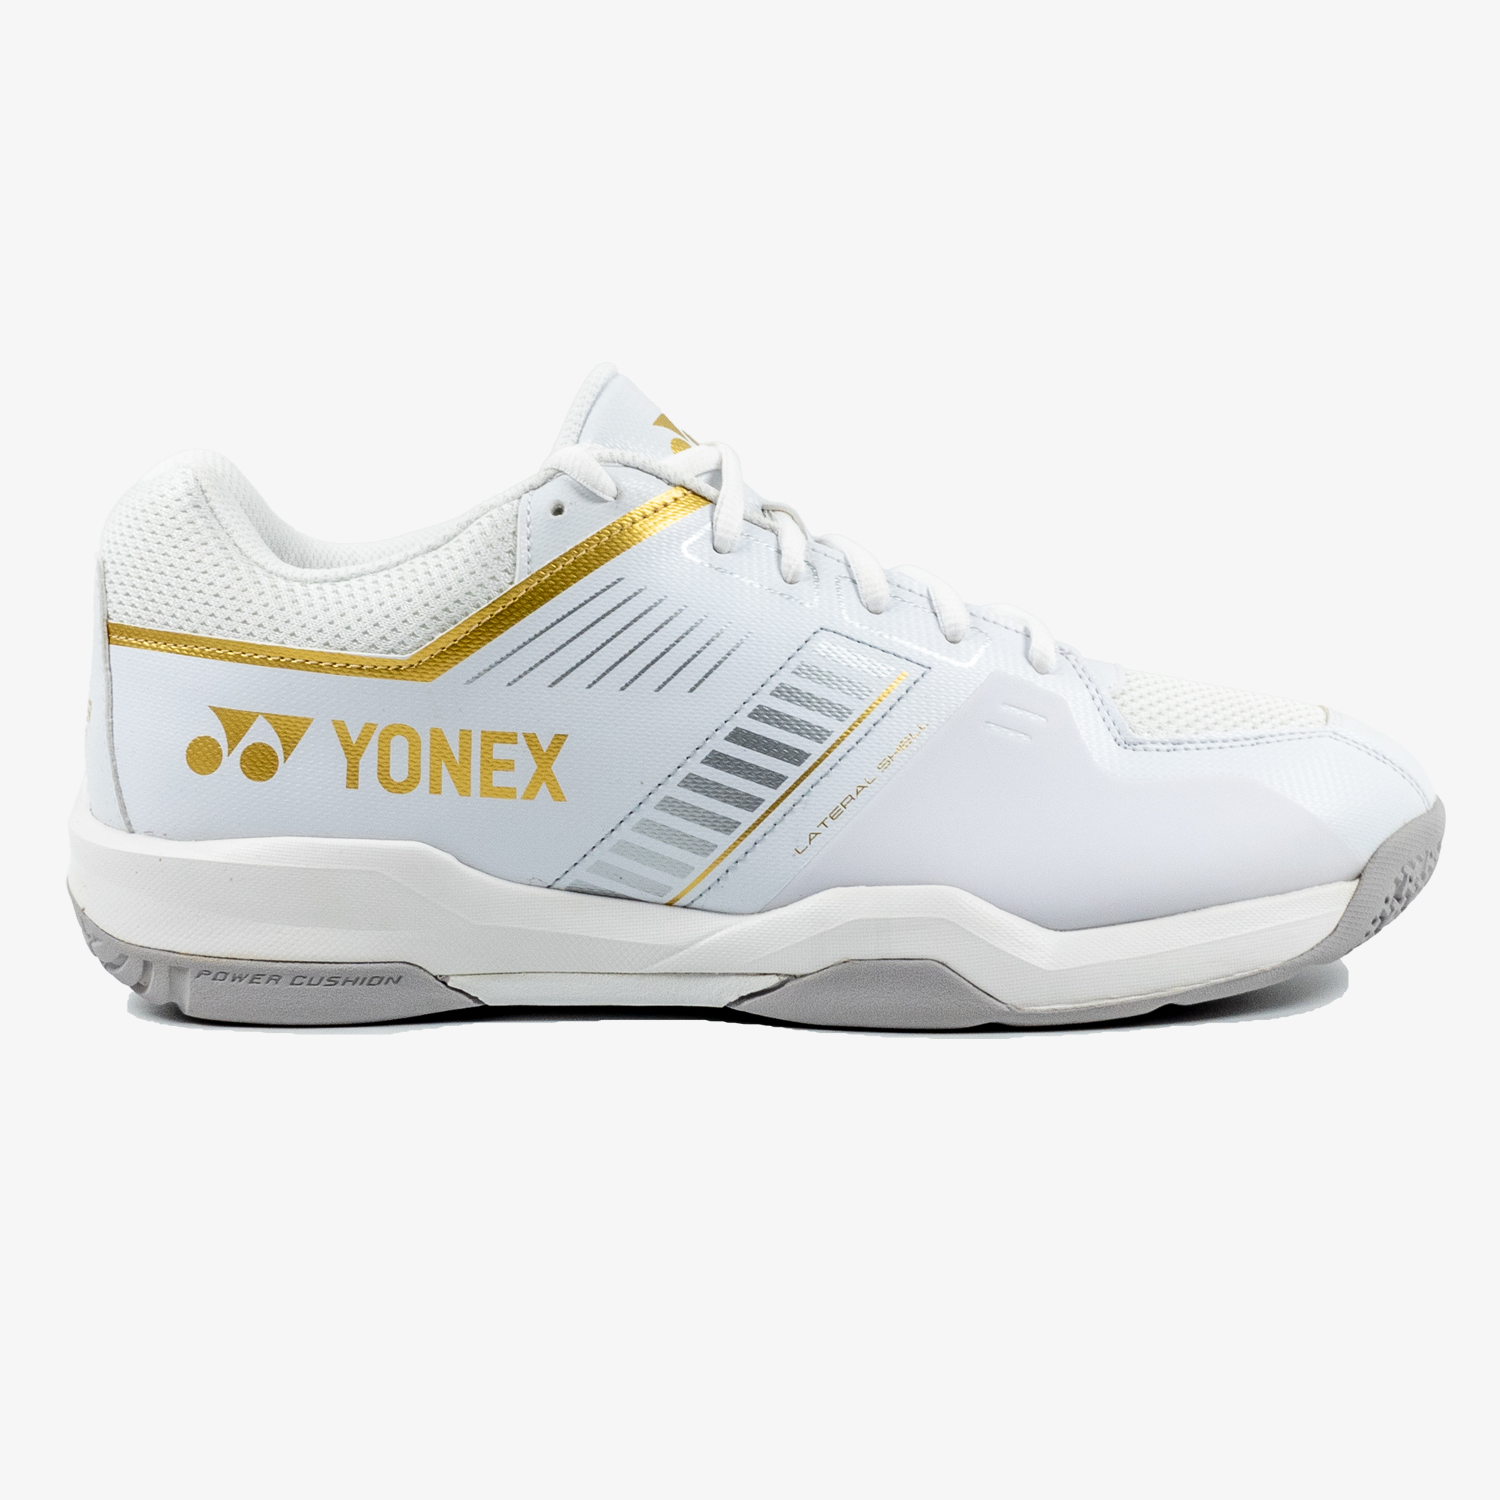 Yonex Strider Wide (White/Gold) Court Shoe